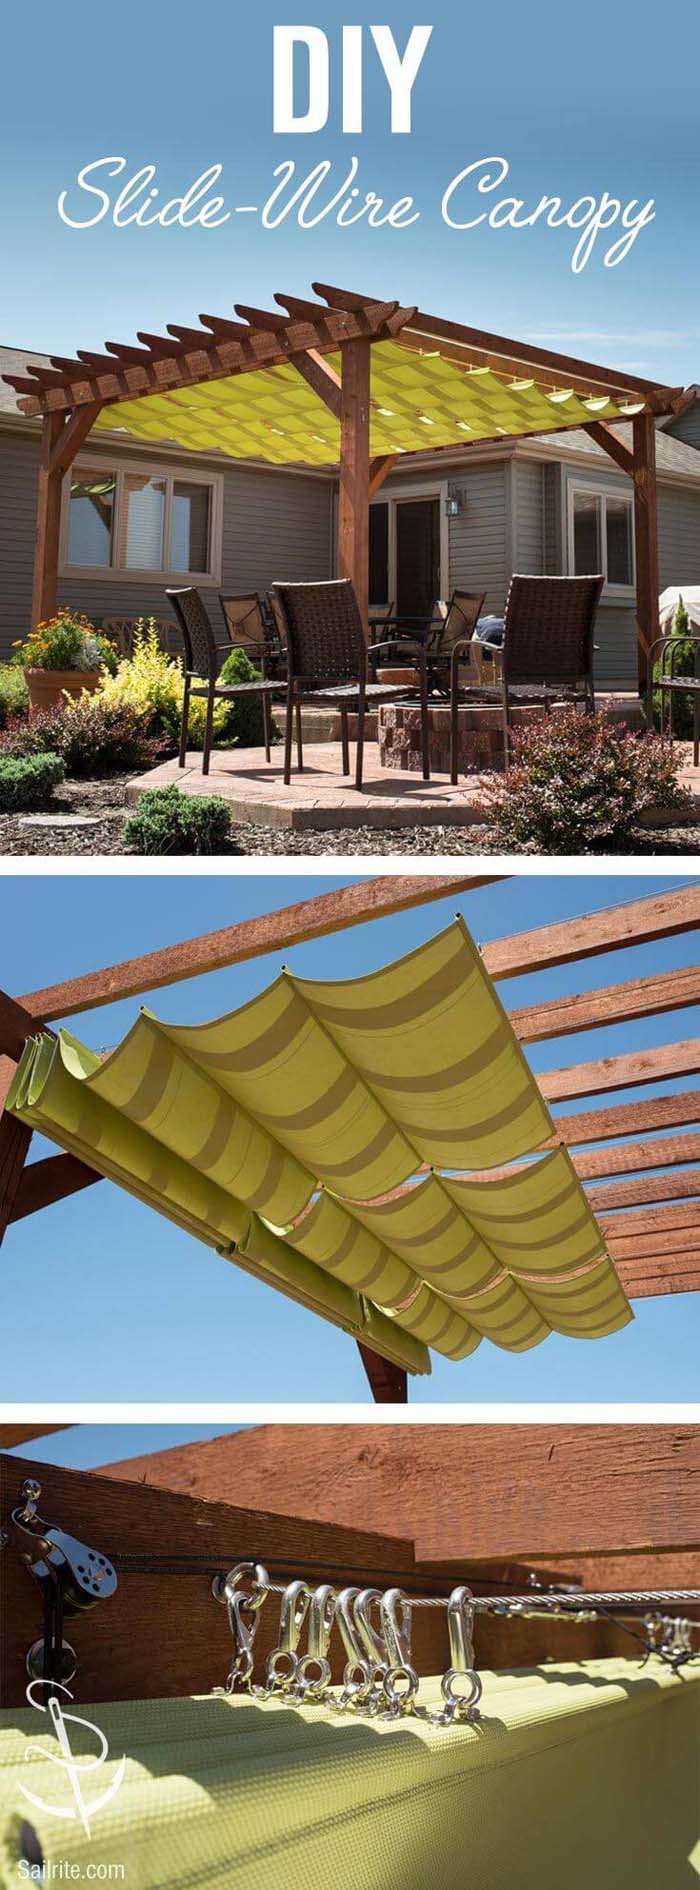 Roman-Style DIY Pergola Canopy #diy #sunshade #patio #backyard #pergola #decorhomeideas